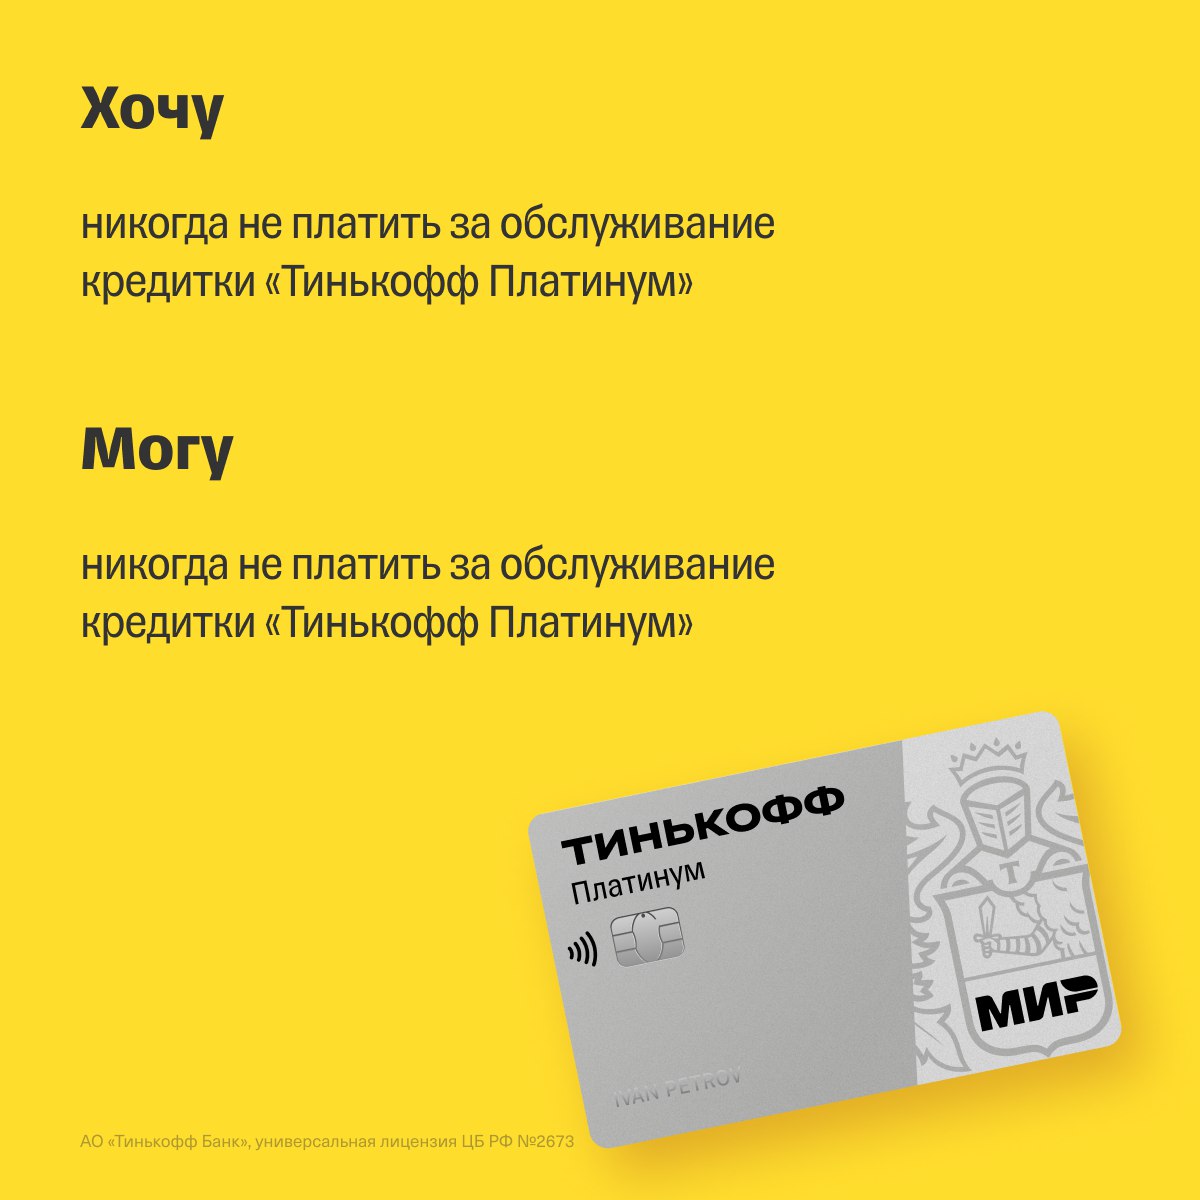 Как увеличить кредитную карту тинькофф платинум. Тинькофф платинум вместо бонусов рубли.